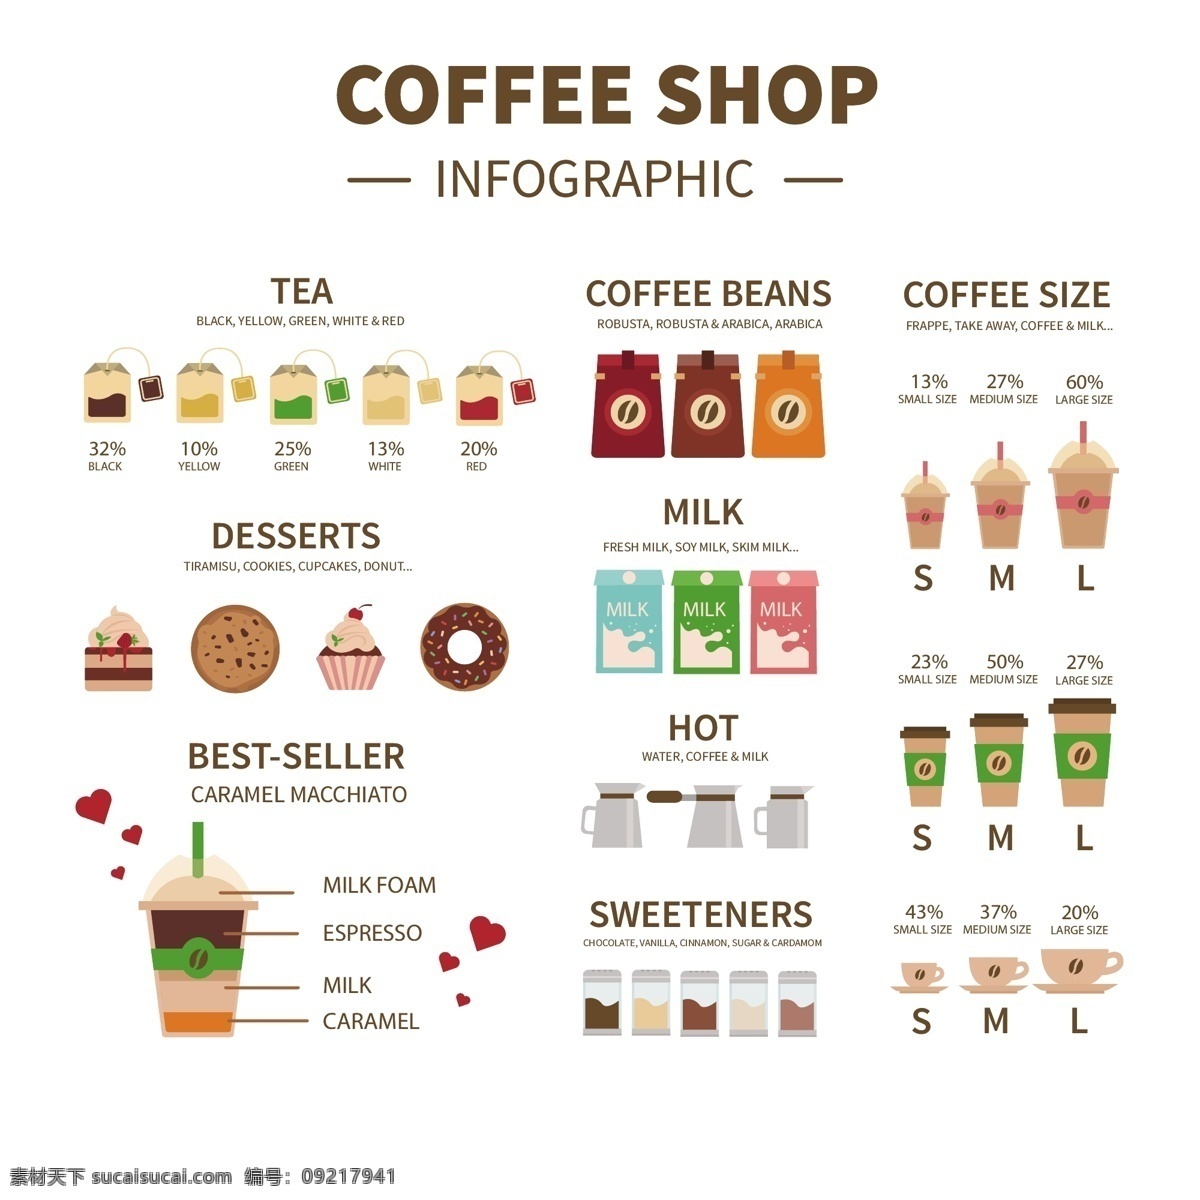 咖啡 商店 信息 图表 咖啡商店 信息图表 业务 地图 模板 平 店 图形 酒吧 流程 数据 形状 最新矢量素材